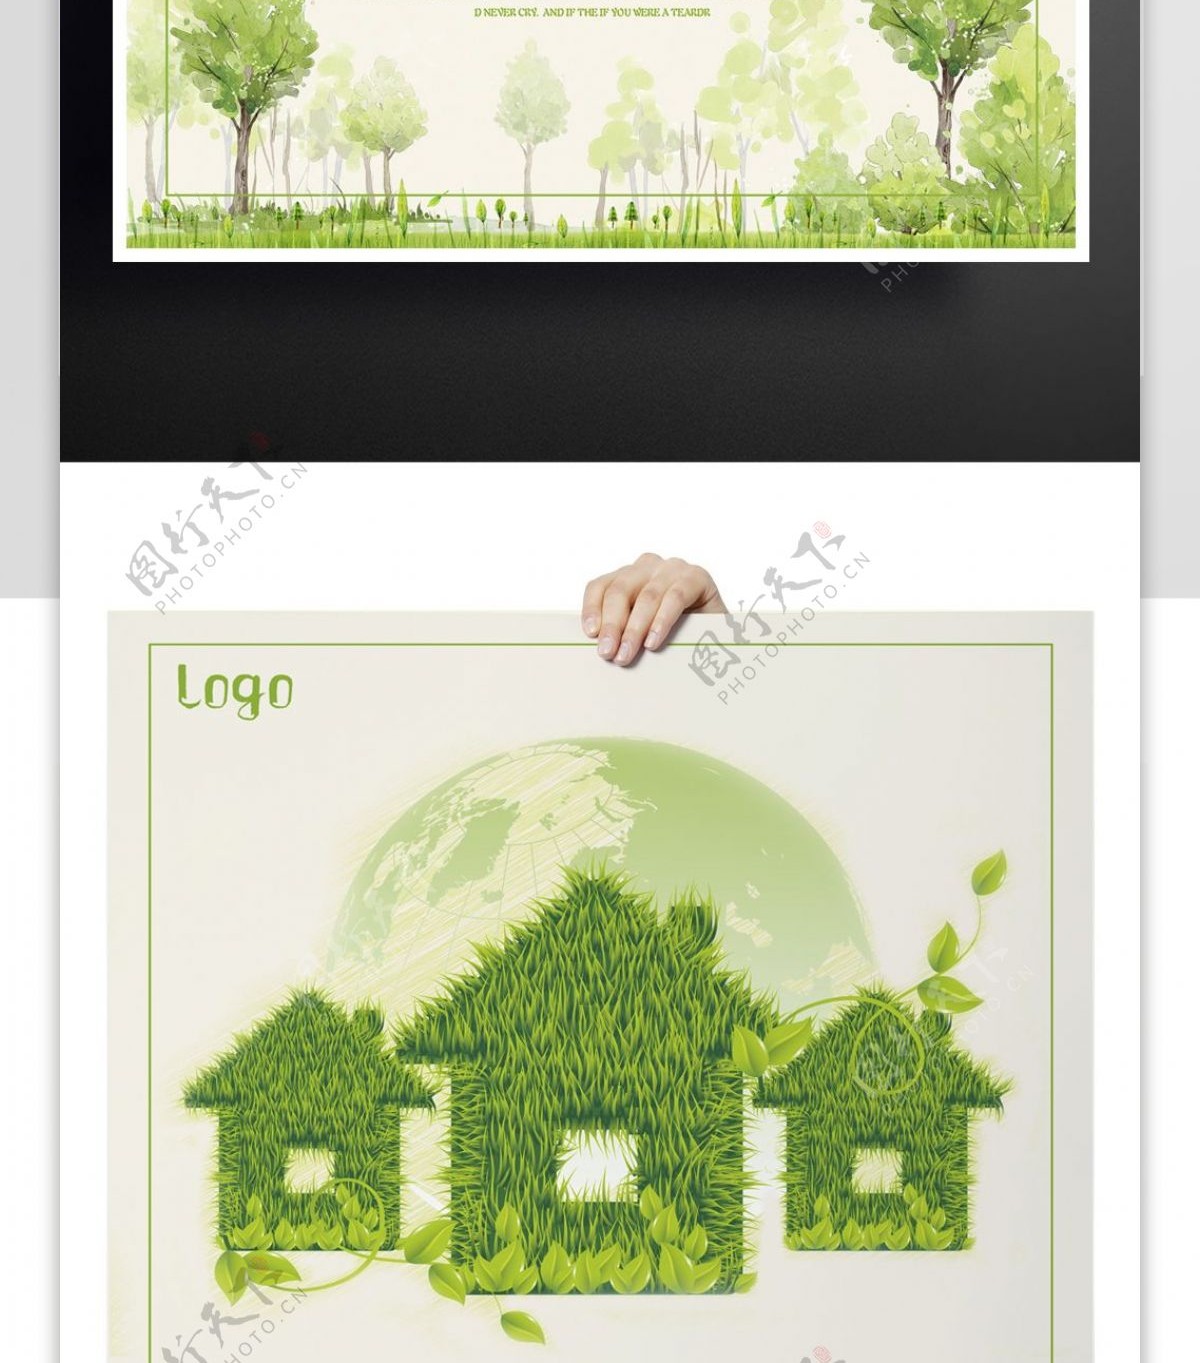 低碳生活公益海报设计